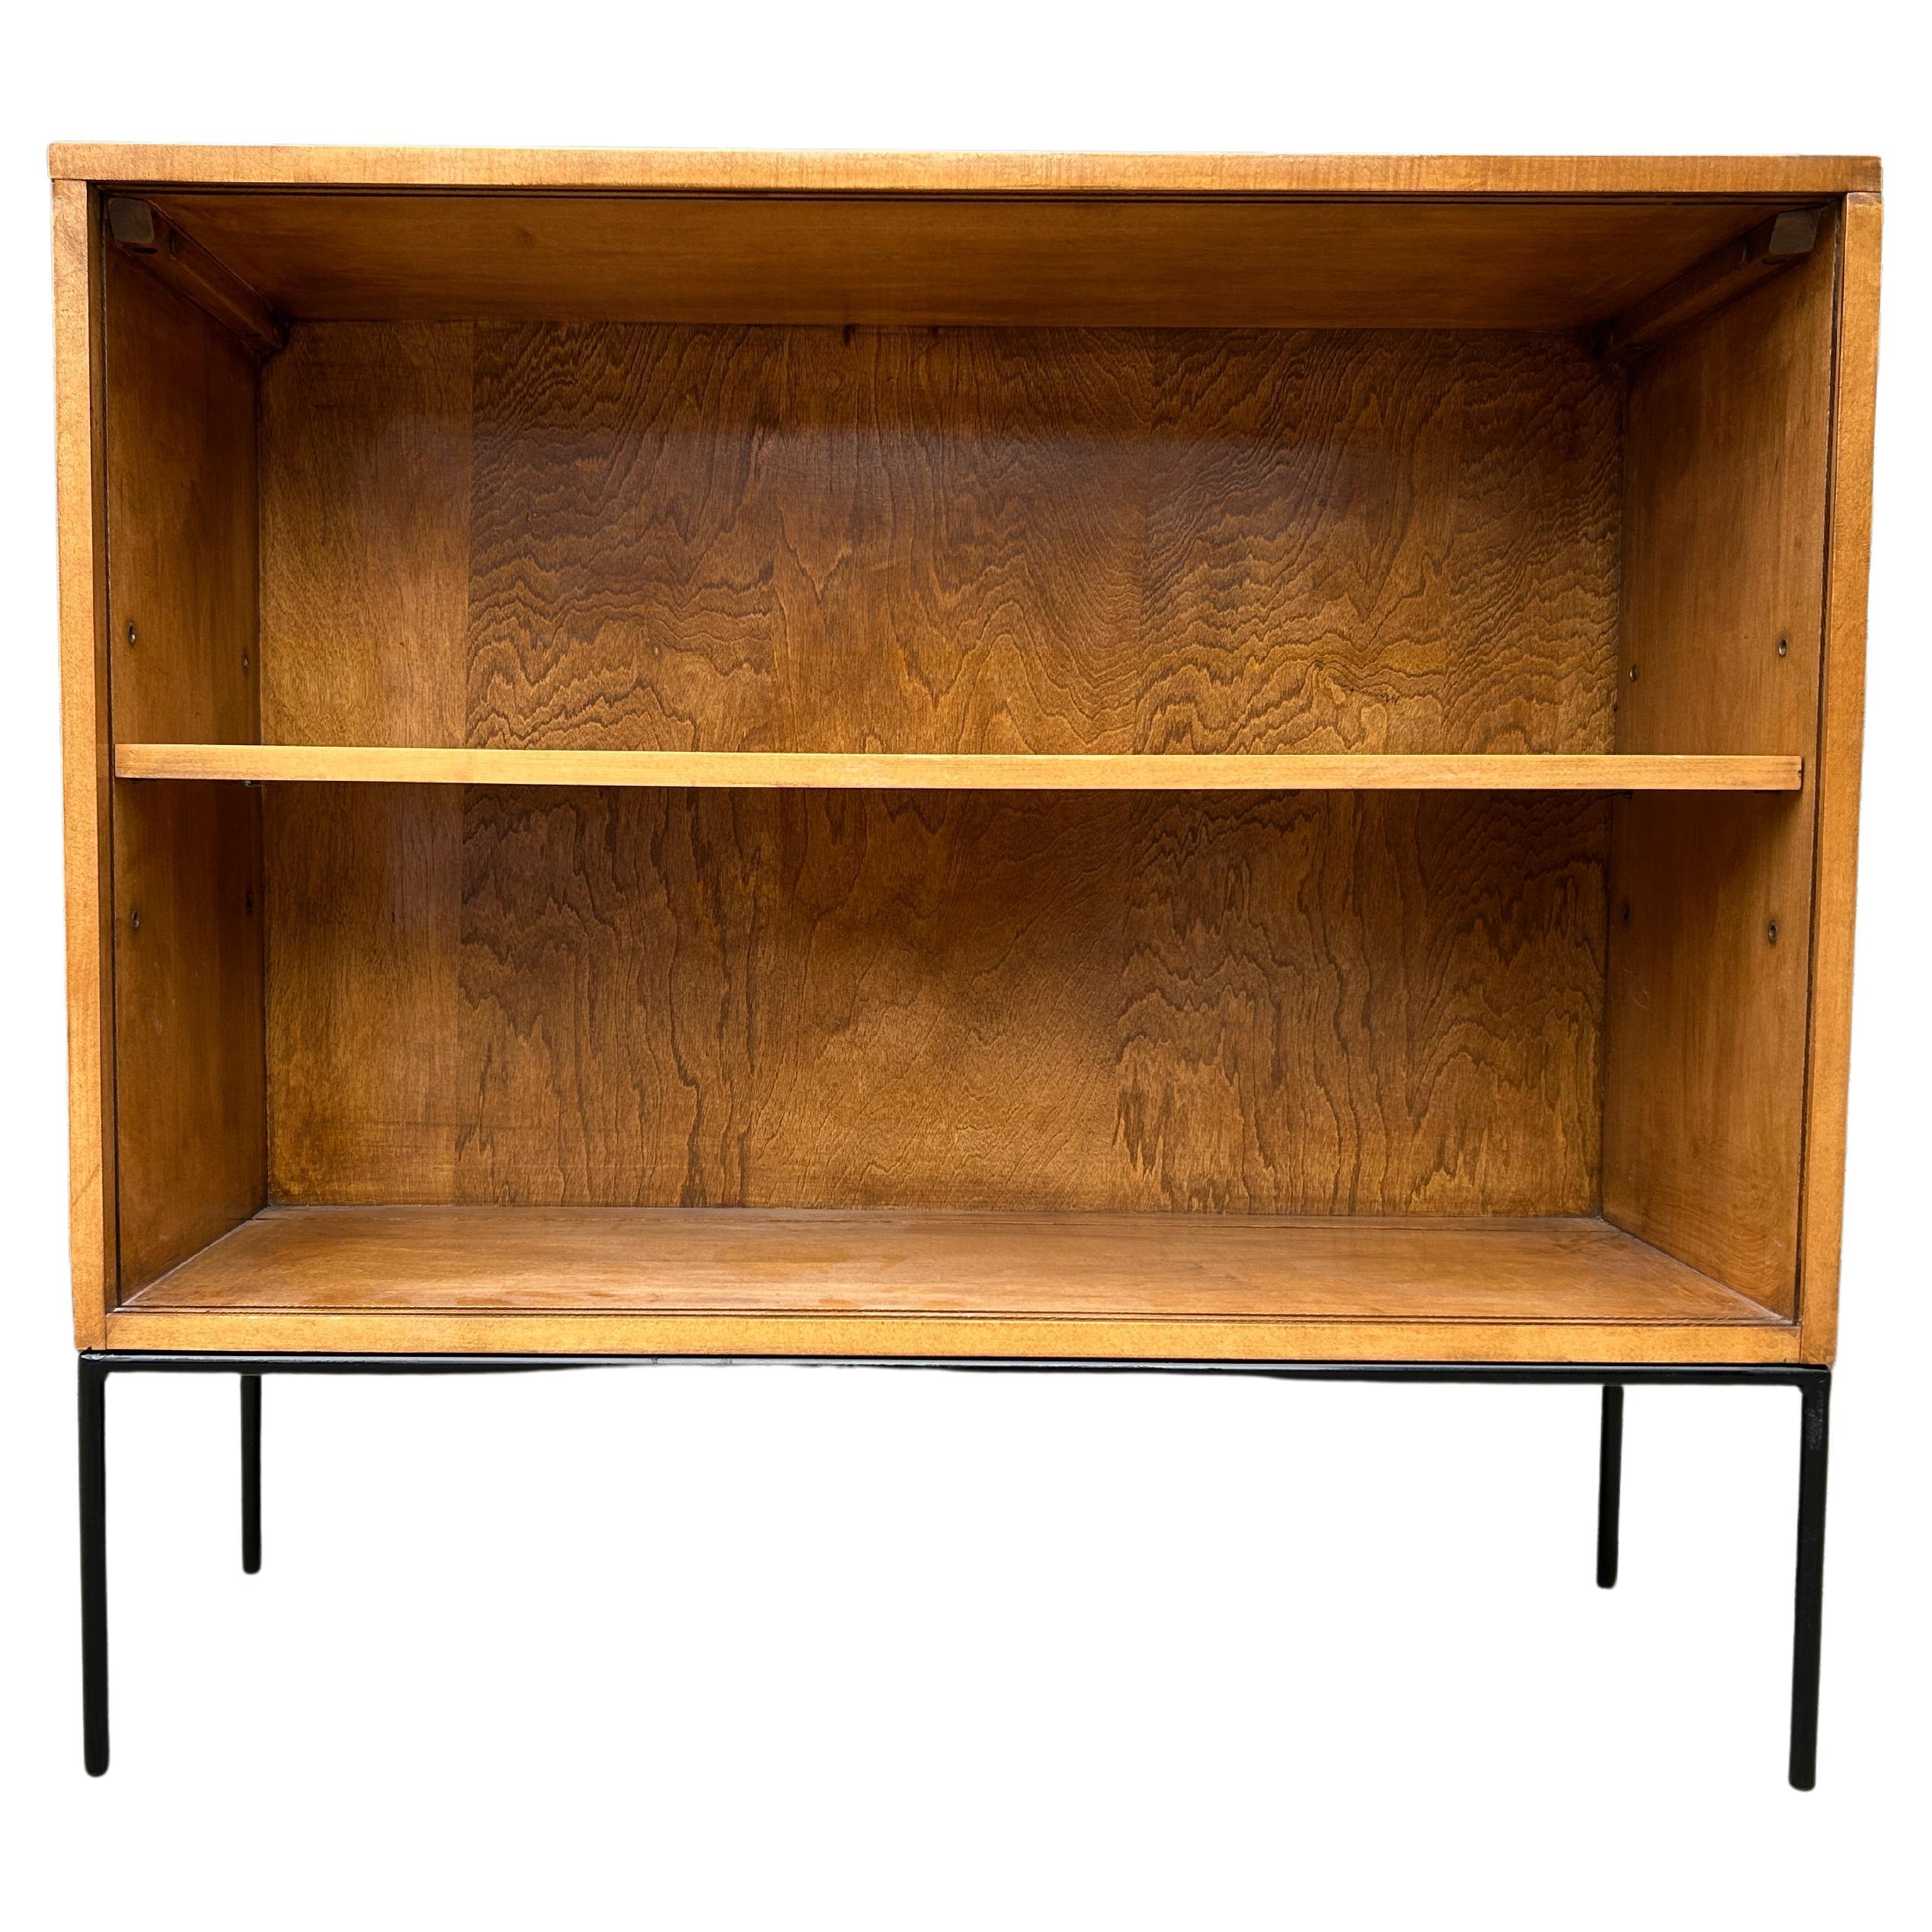 Midcentury Paul McCobb Single Bookcase #1516 Iron Base Adjustable Shelf For Sale